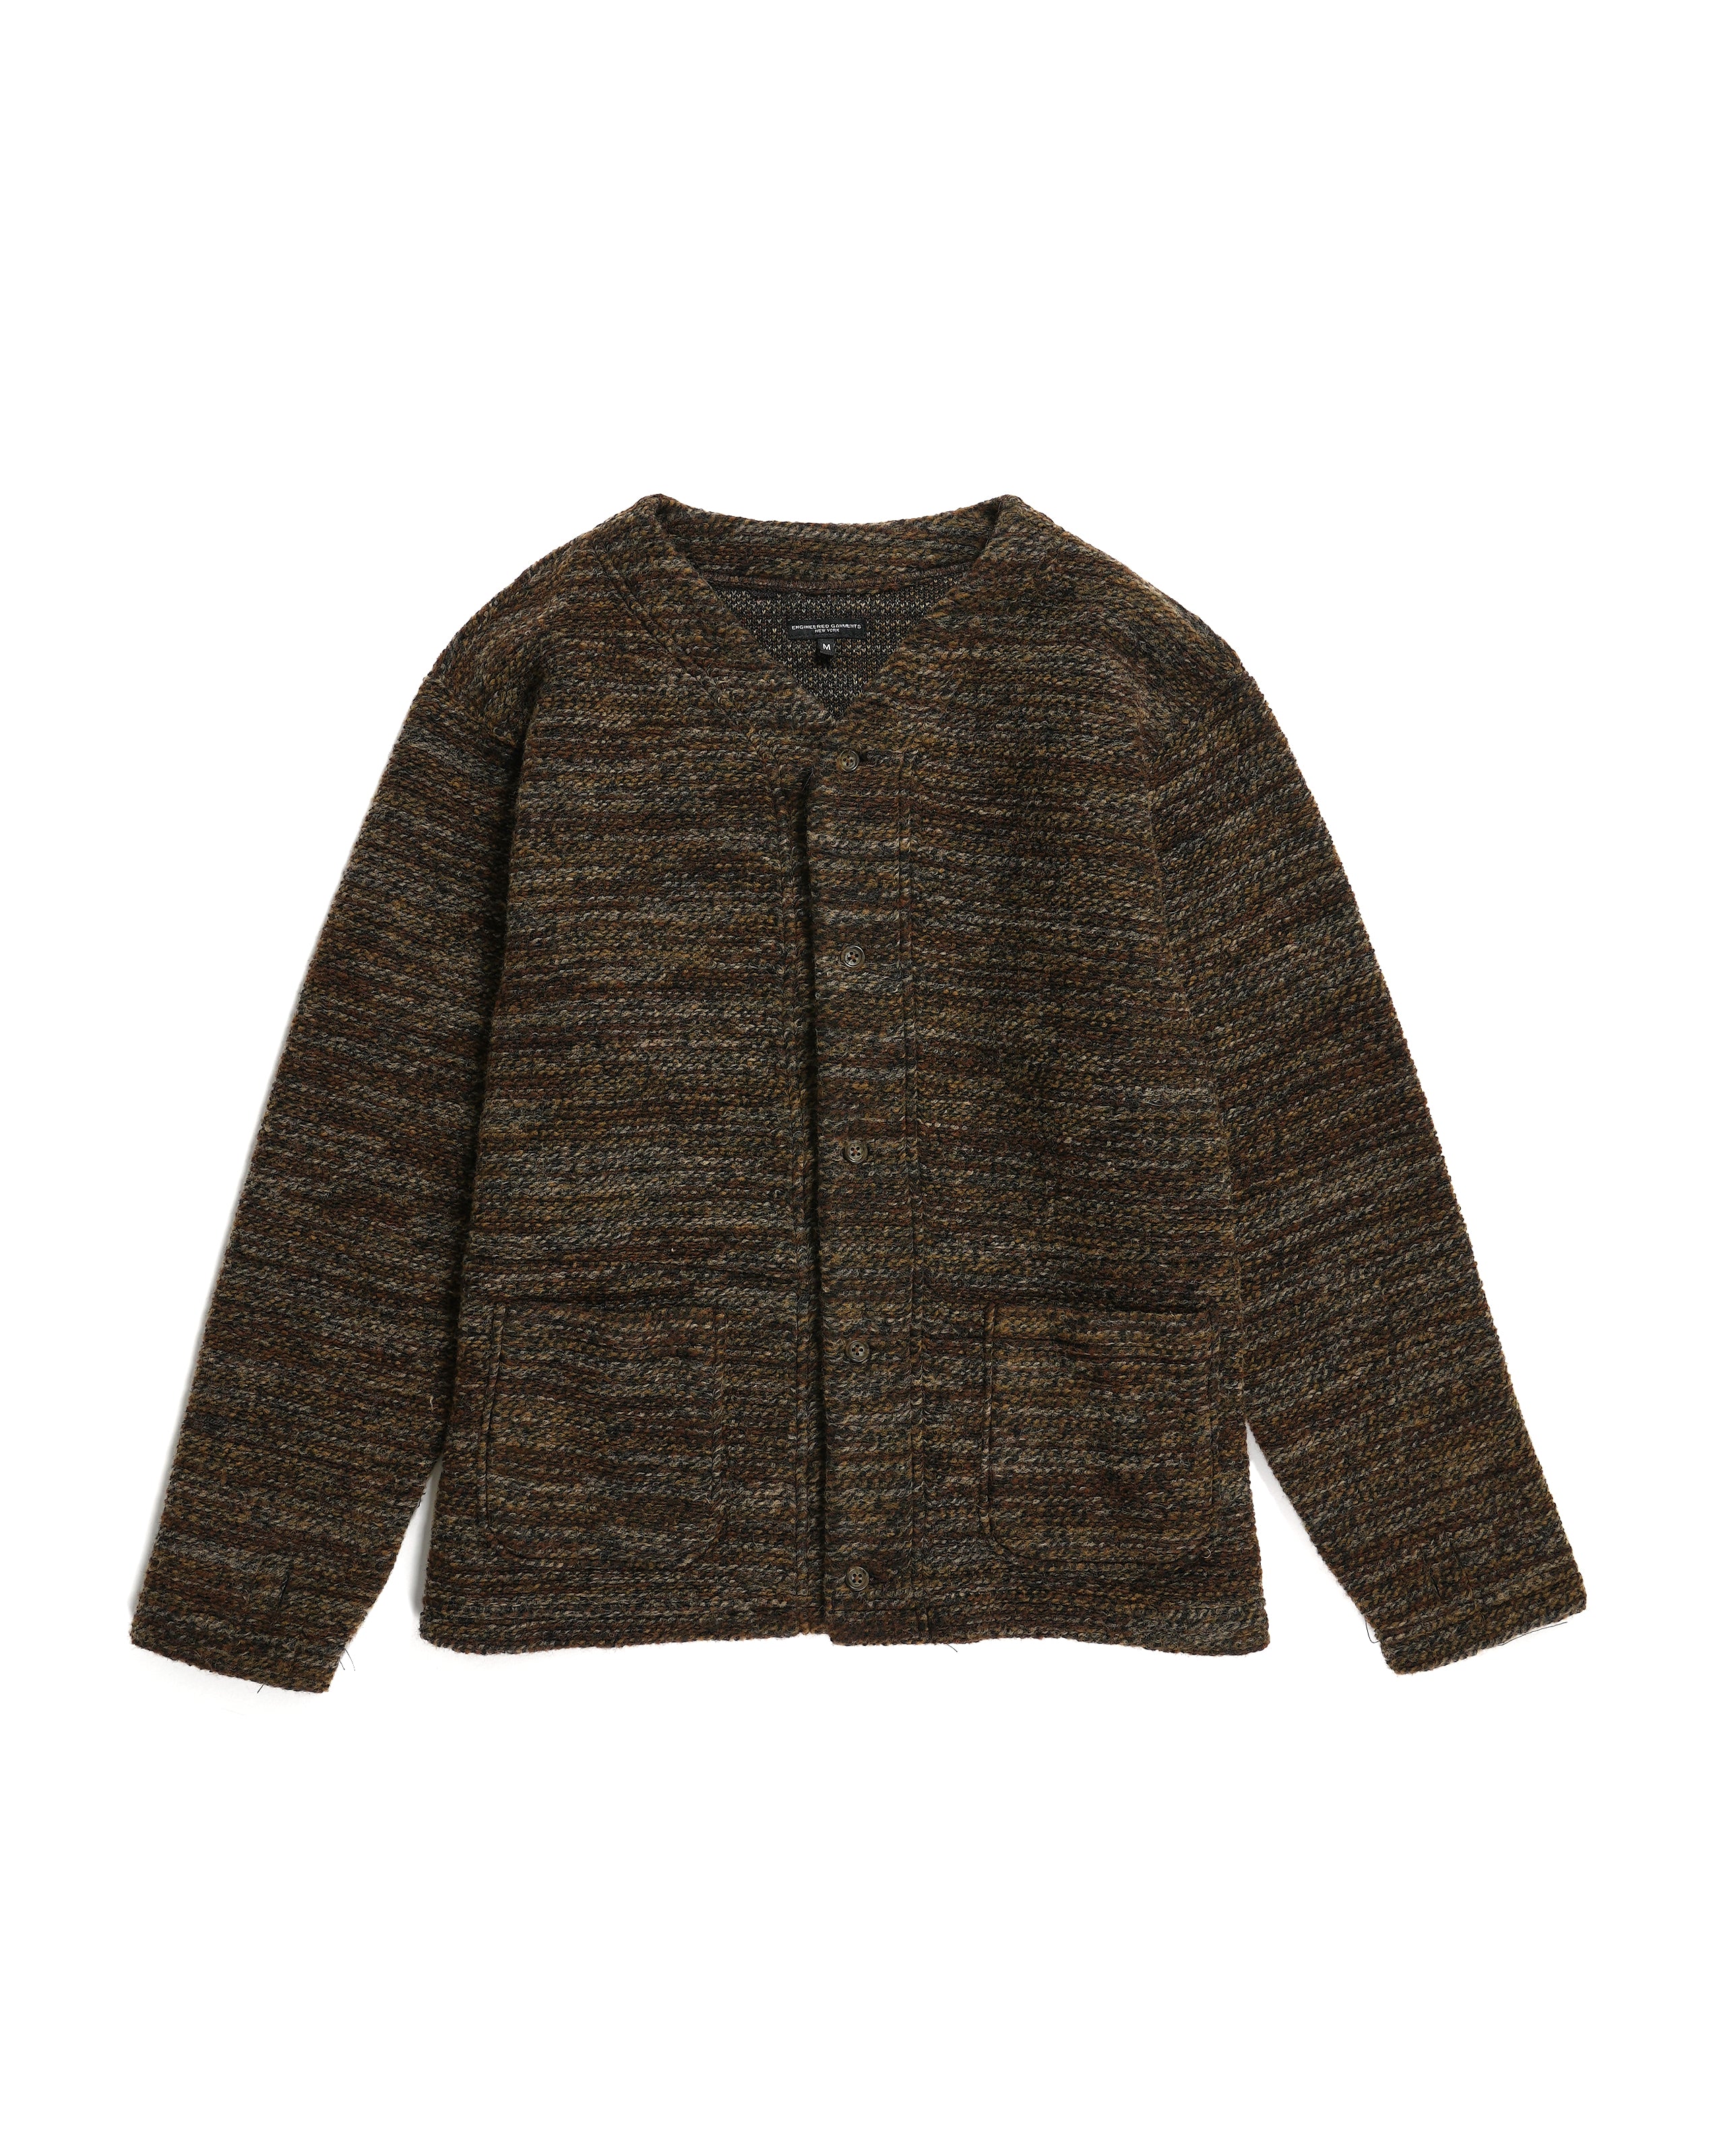 Knit Cardigan - Brown Poly Wool Melange Knit